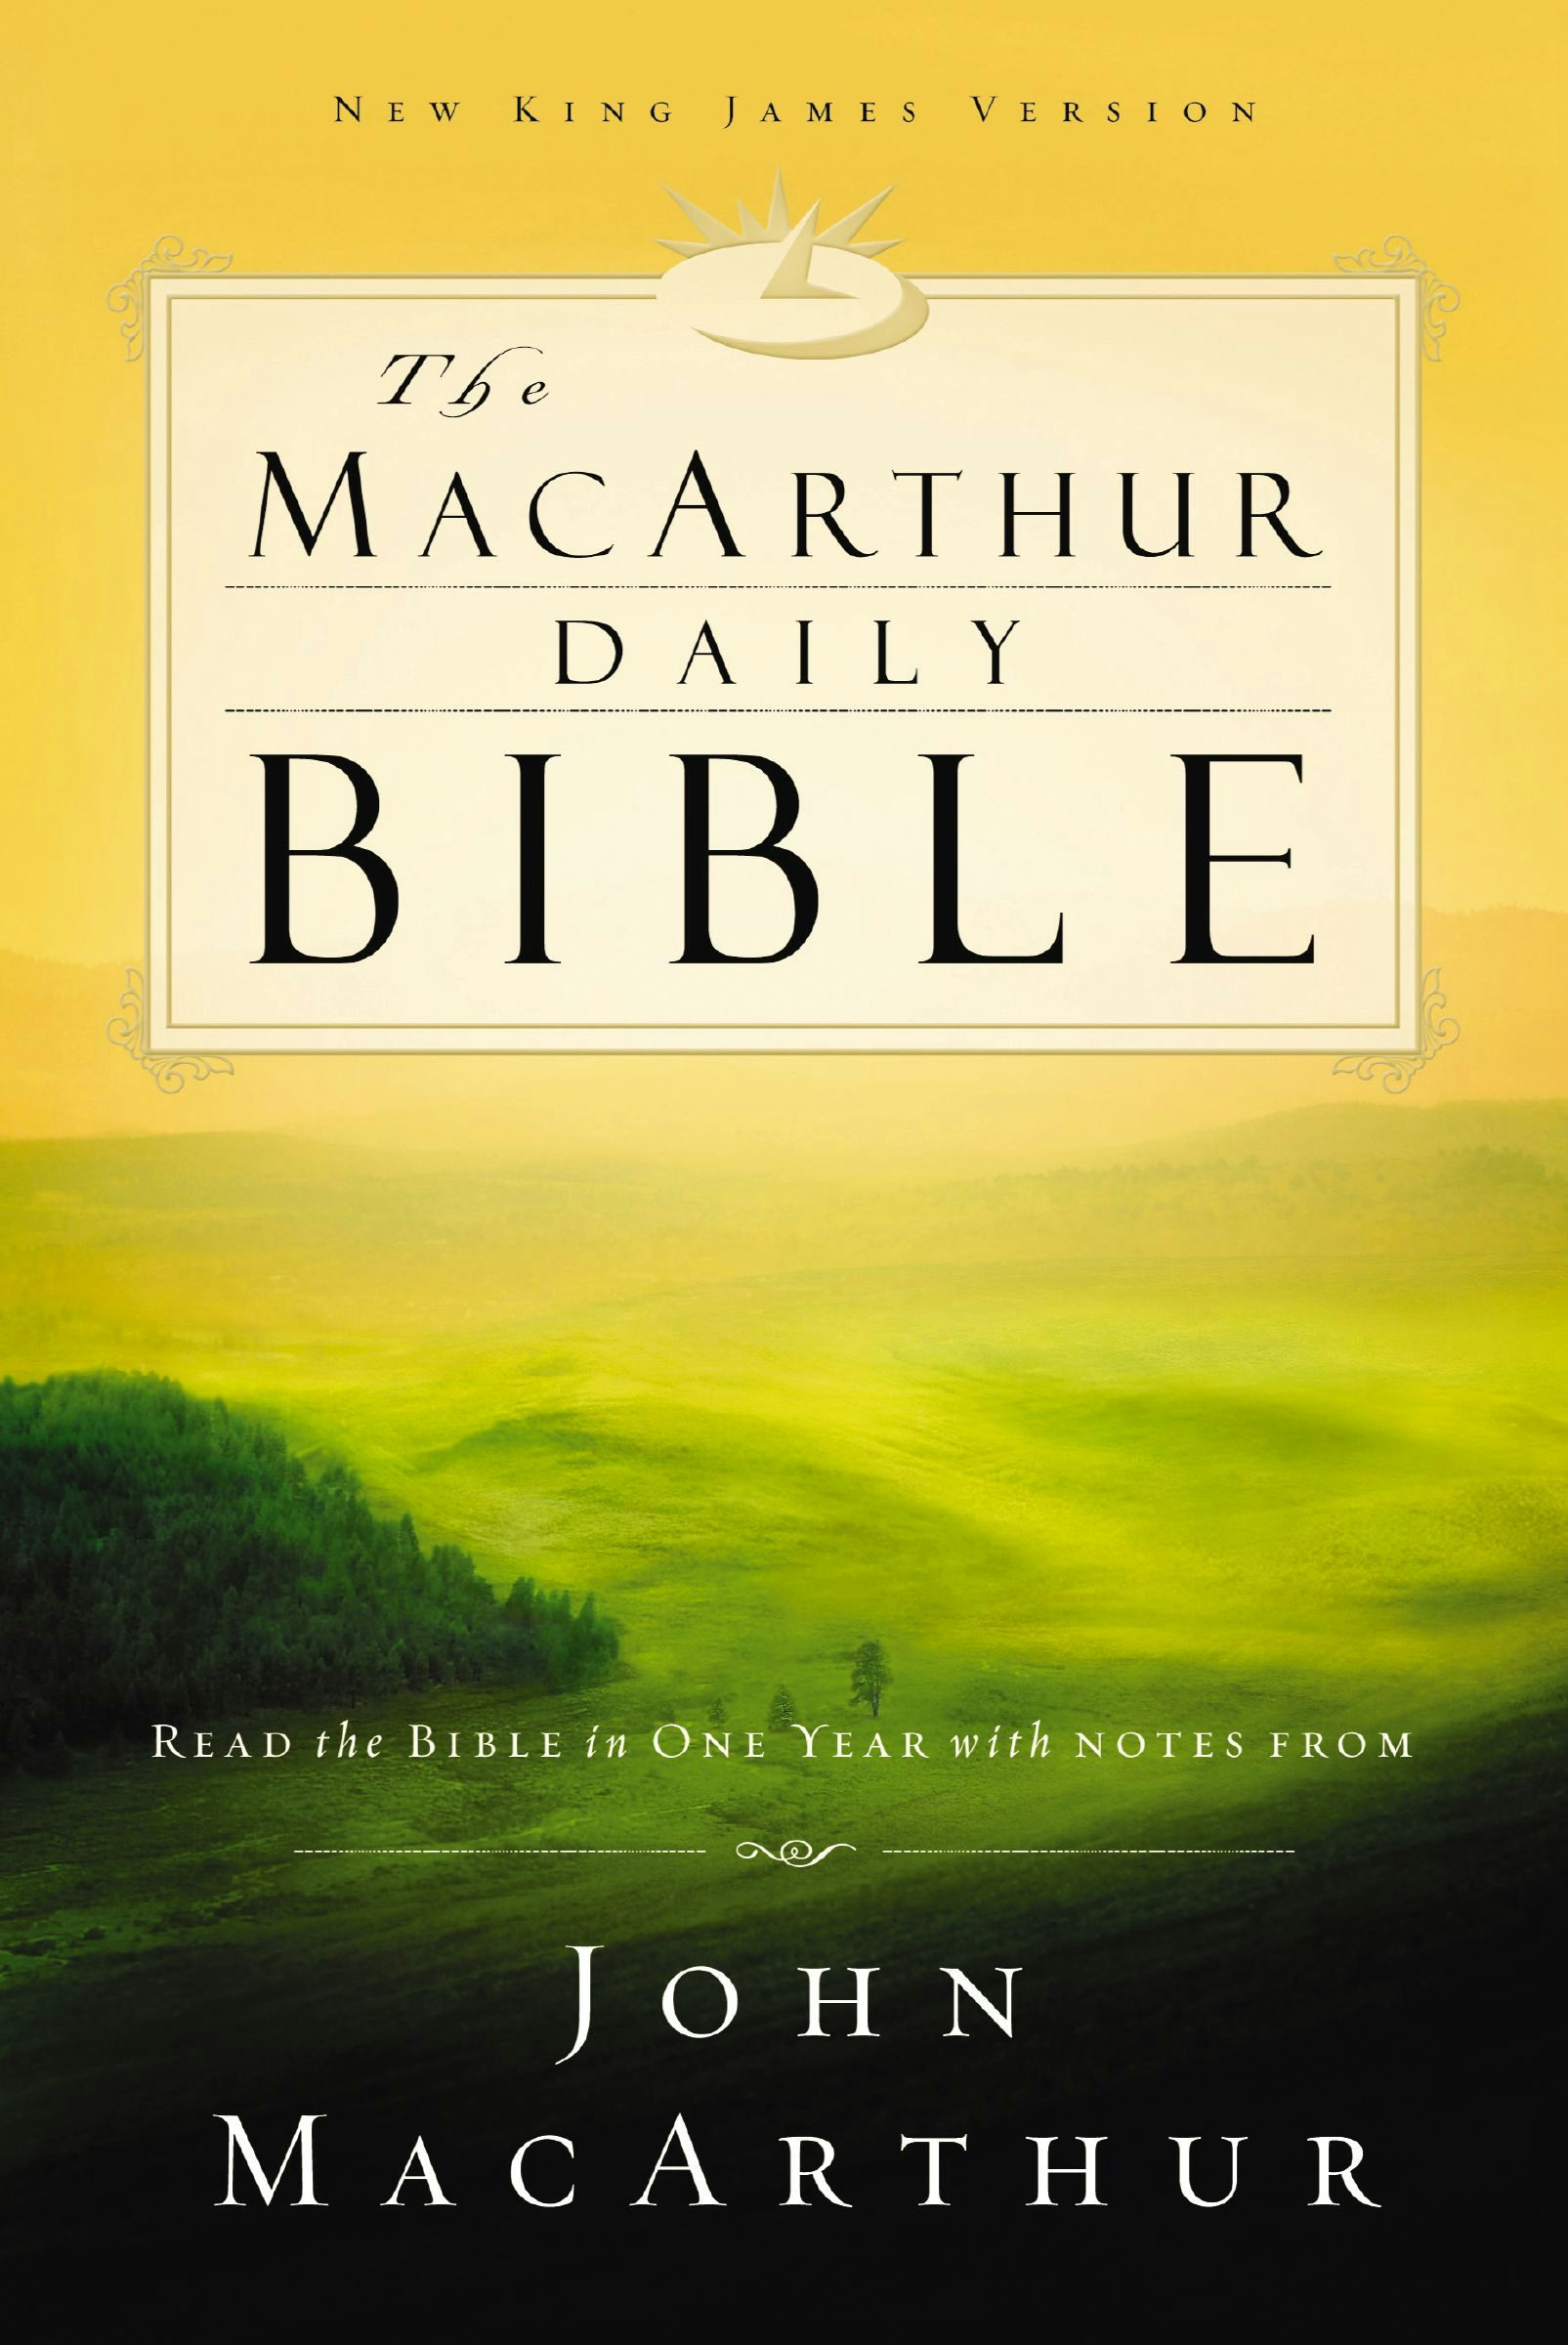 mcarthur daily bible